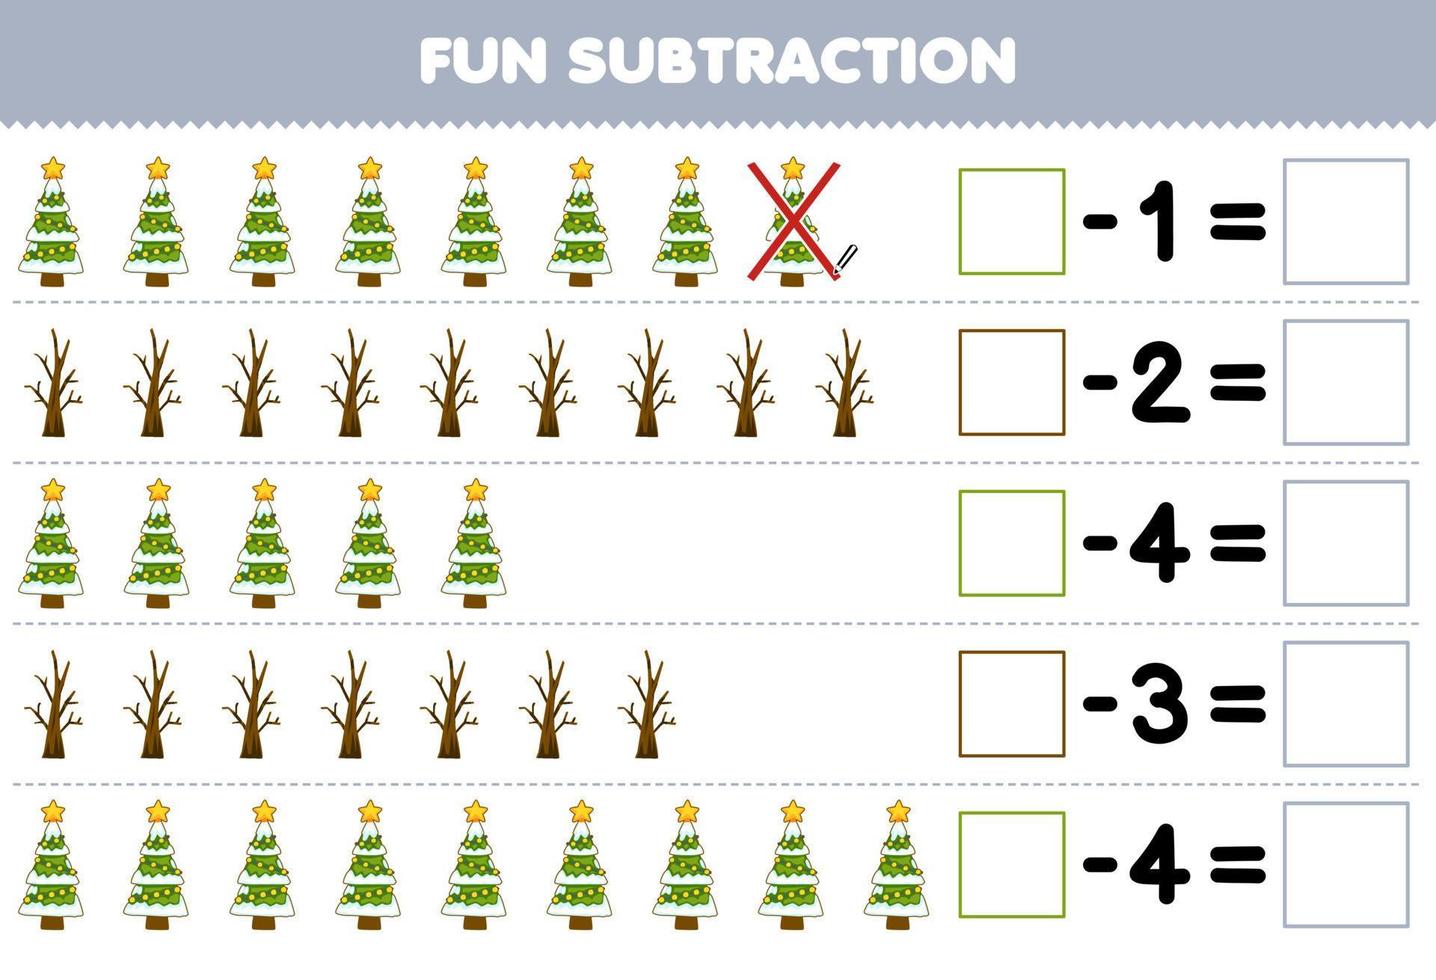 Lernspiel für Kinder Spaßsubtraktion durch Zählen des niedlichen Cartoon-Weihnachtsbaums in jeder Reihe und Eliminieren des druckbaren Winterarbeitsblatts vektor